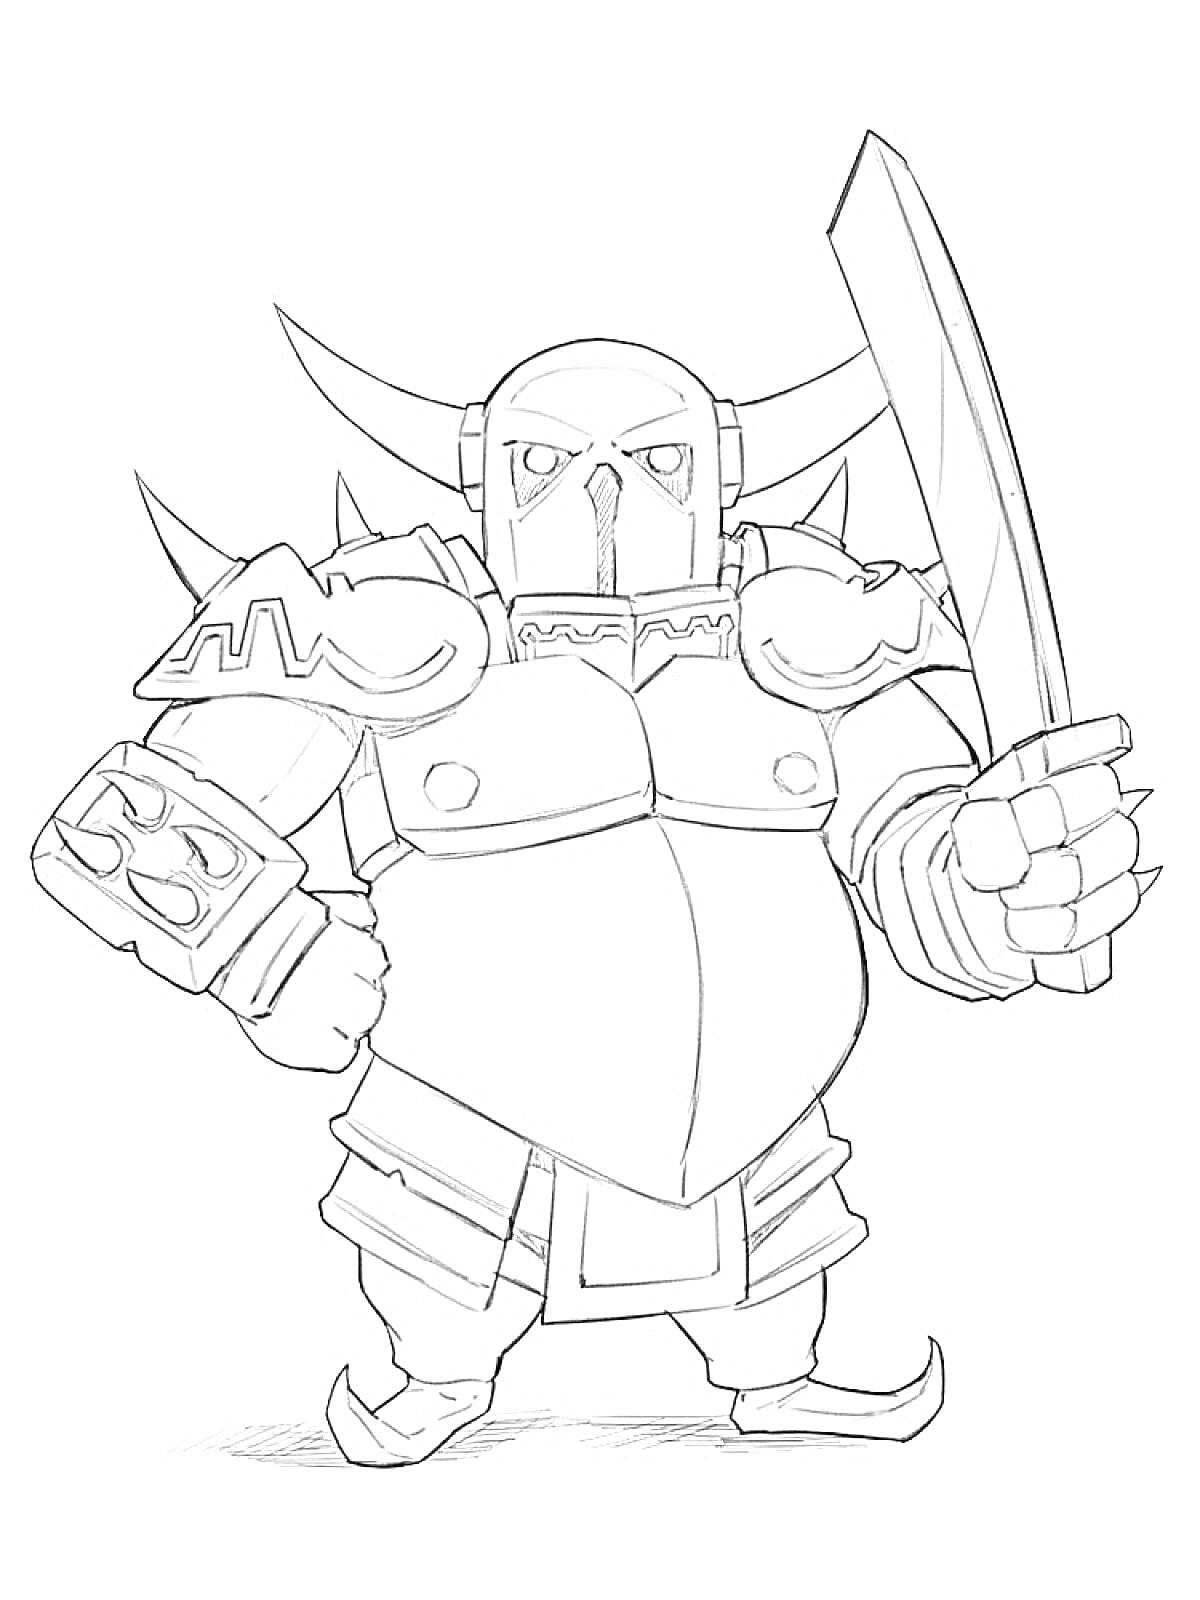 Раскраска Воин в шлеме с рогами, меч в правой руке, щит на левой руке, доспехи с шипами на плечах